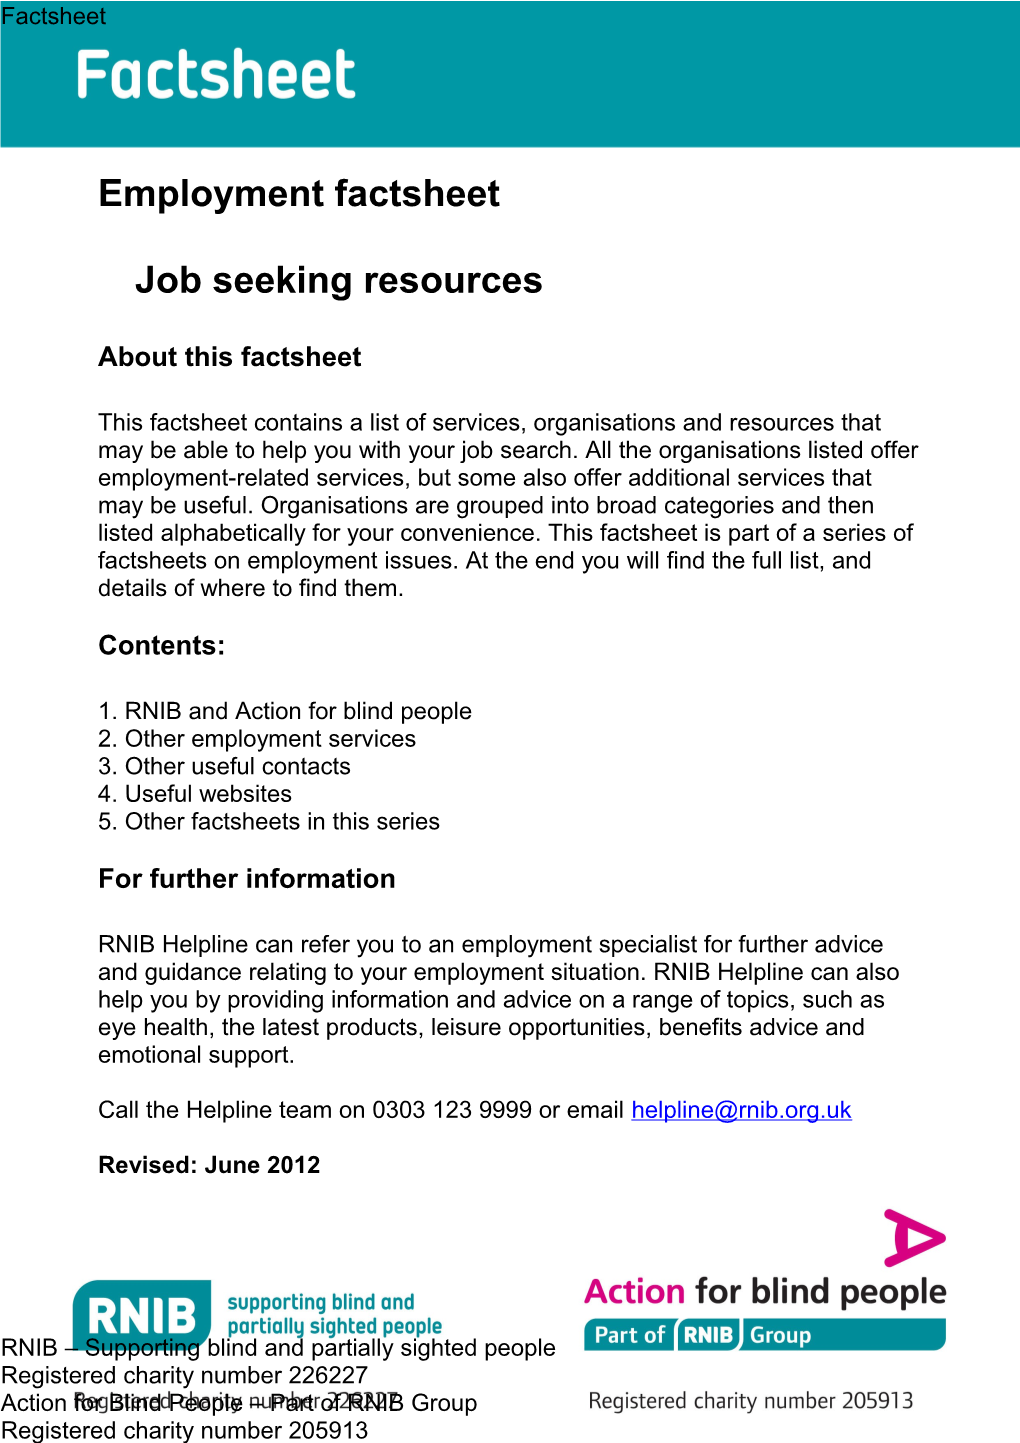 Job Seeking Resources Factsheet